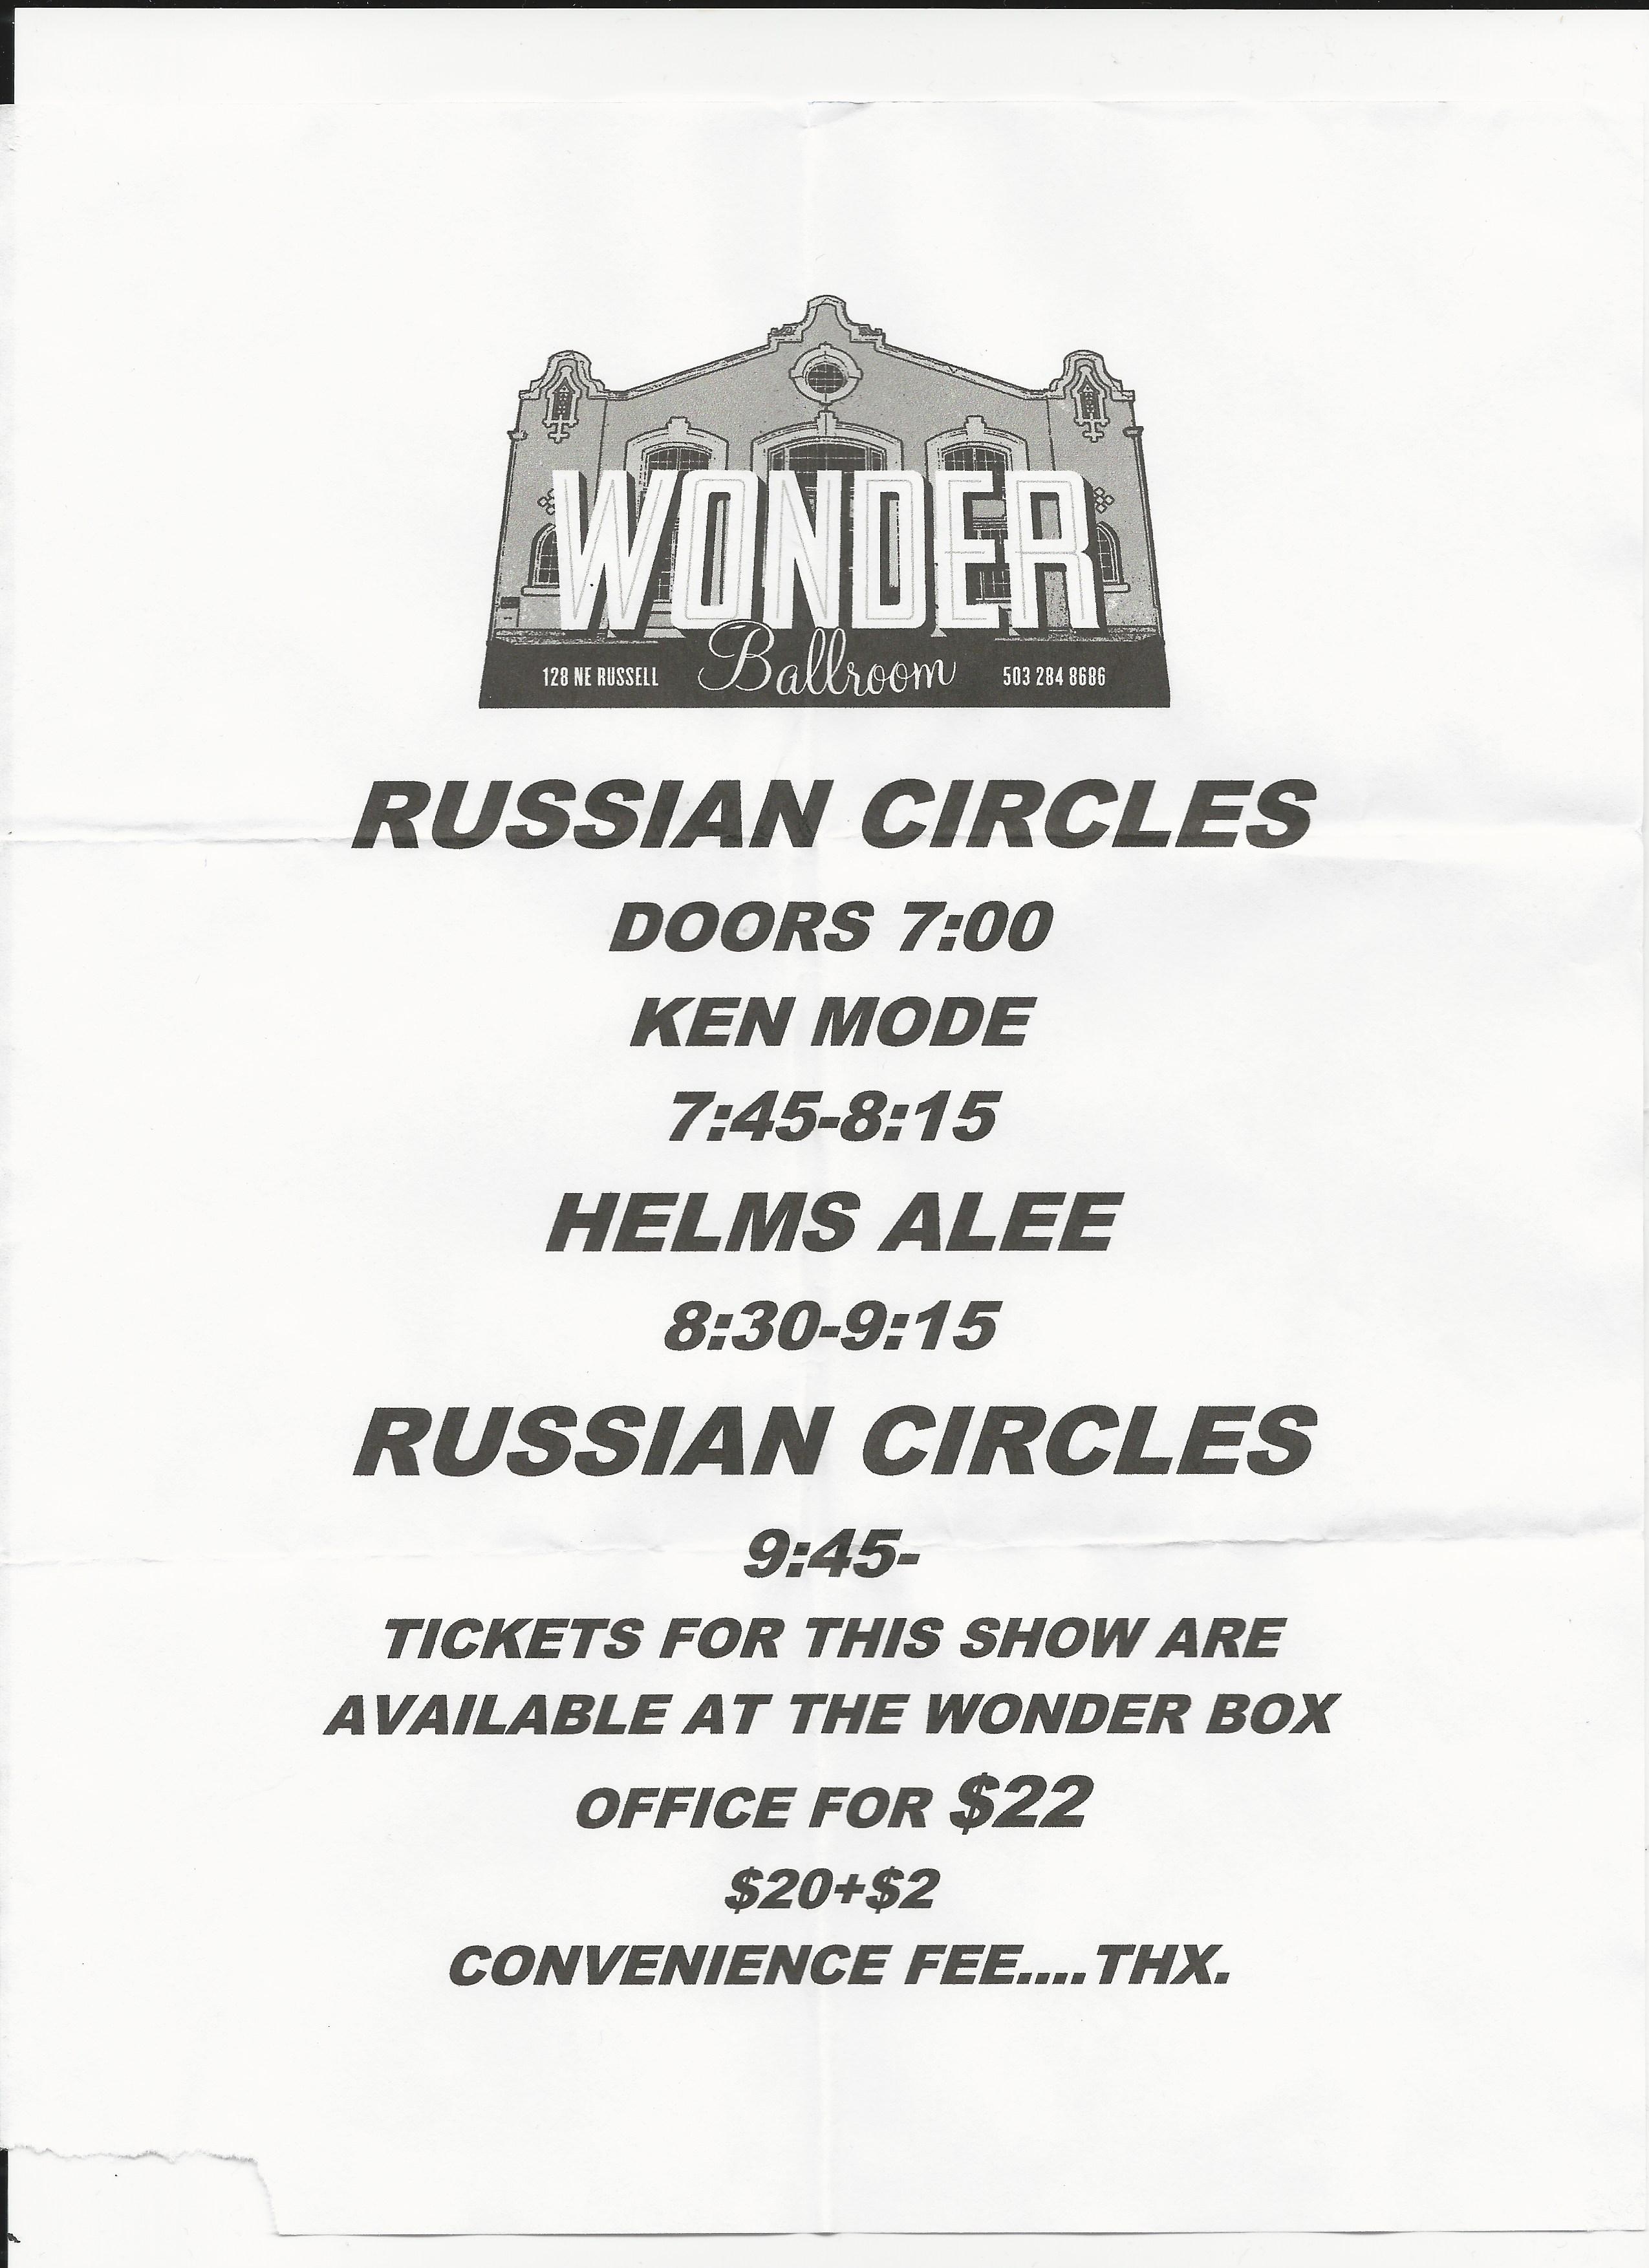 RussianCircles2014-03-05WonderBallroomPortlandOR (2).jpg